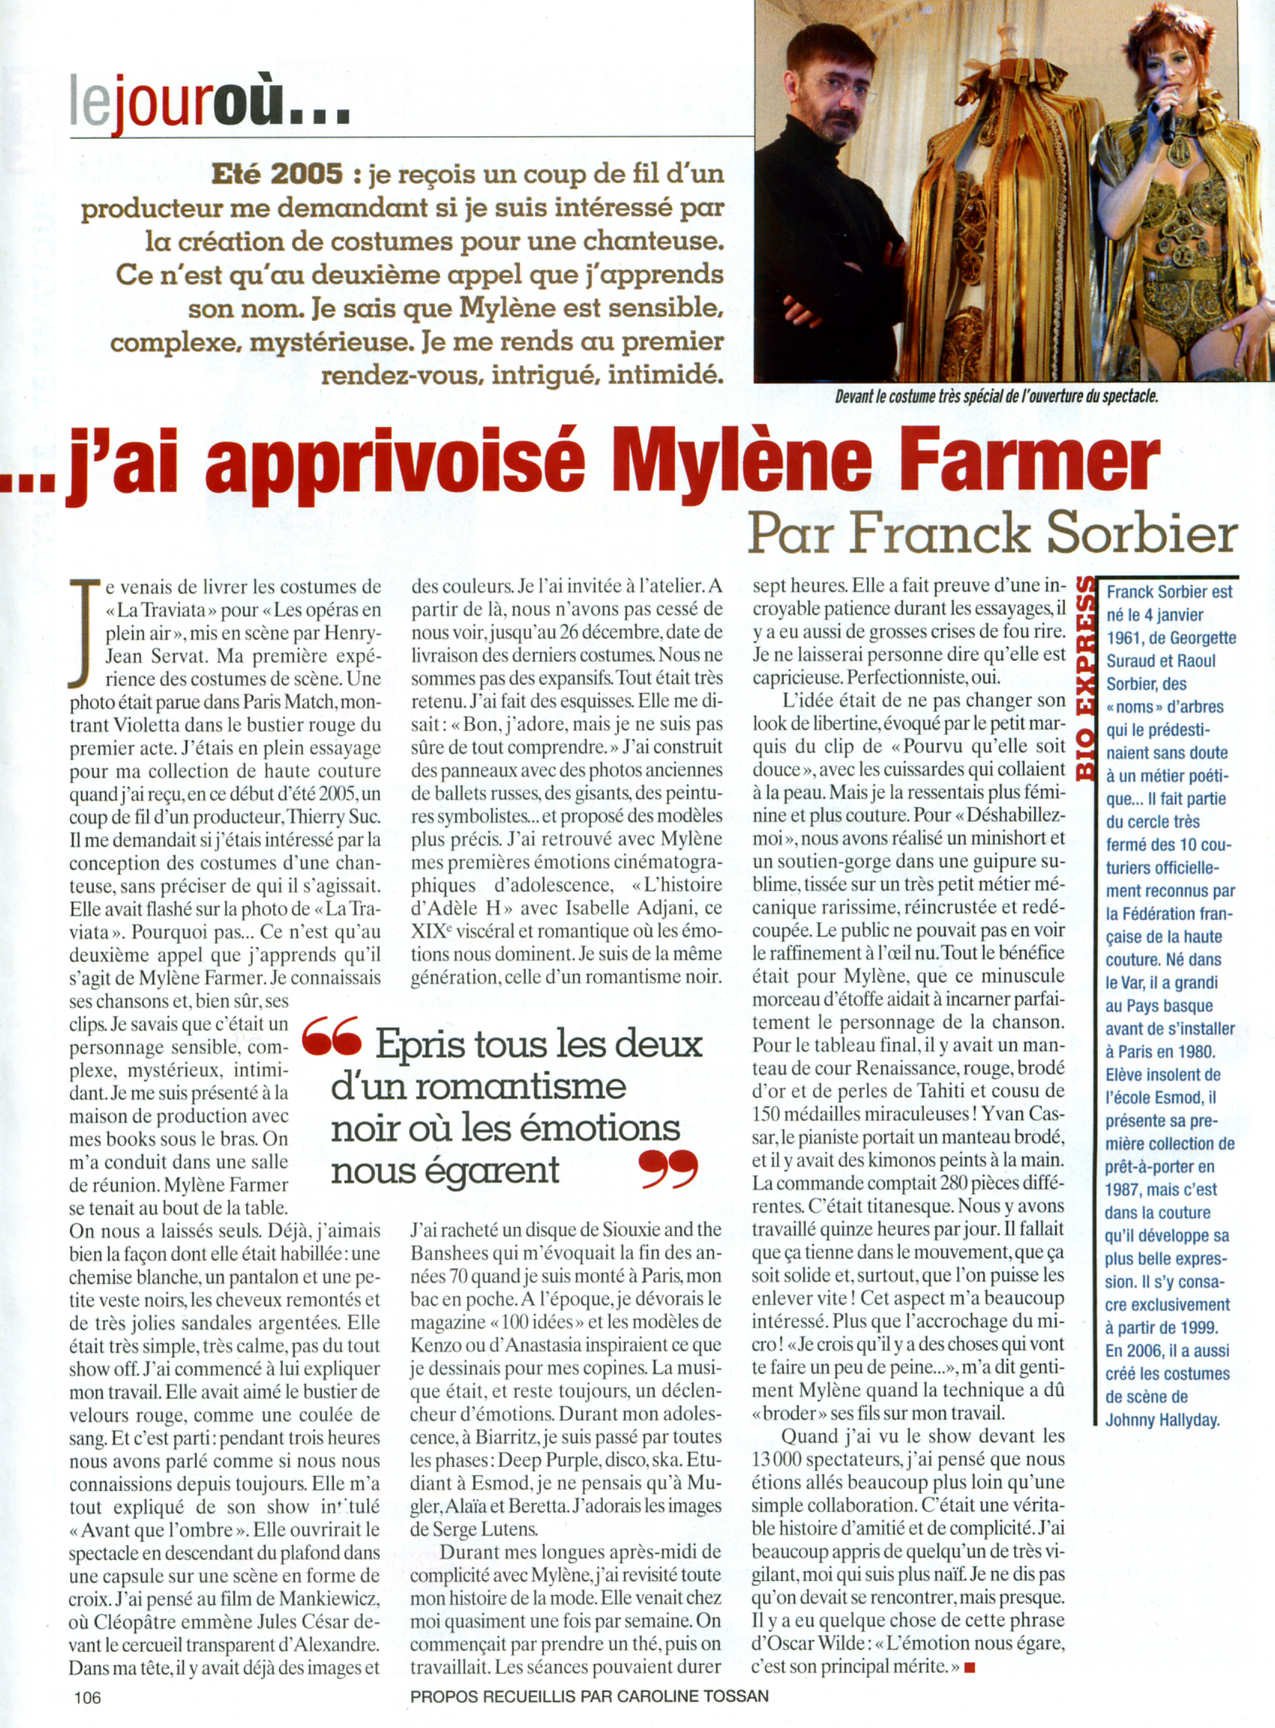 Paris Match 10 janvier 2008